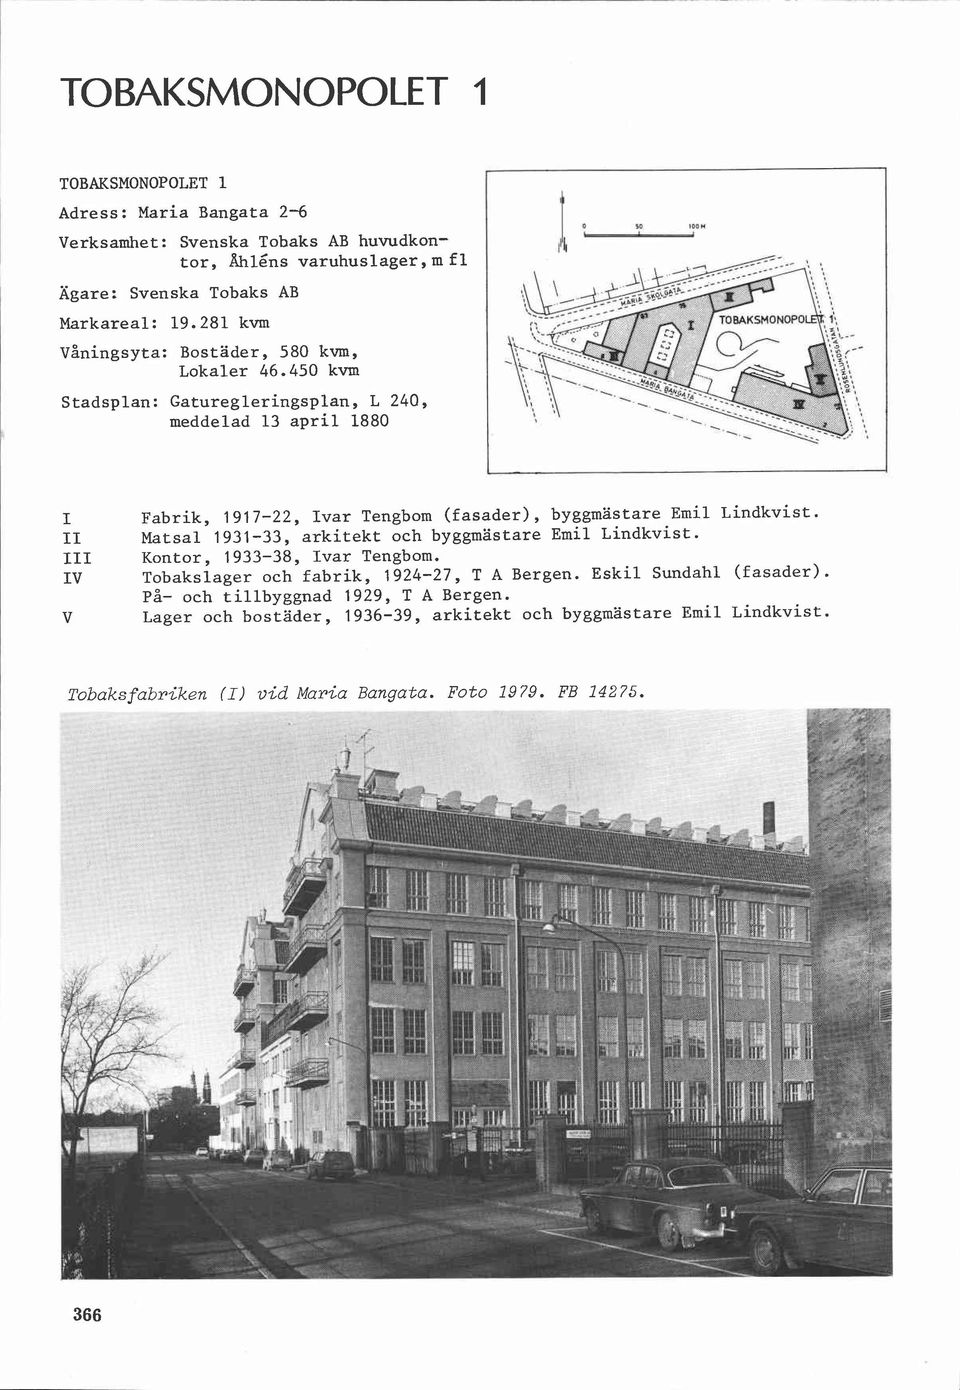 450 kvm Stadsplan: Gaturegleringsplan, L 240, meddelad 13 april 1880 I II III IV V Fabrik, 1917-22, Ivar Tengbom (fasader), byggmästare Emil Lindkvist.